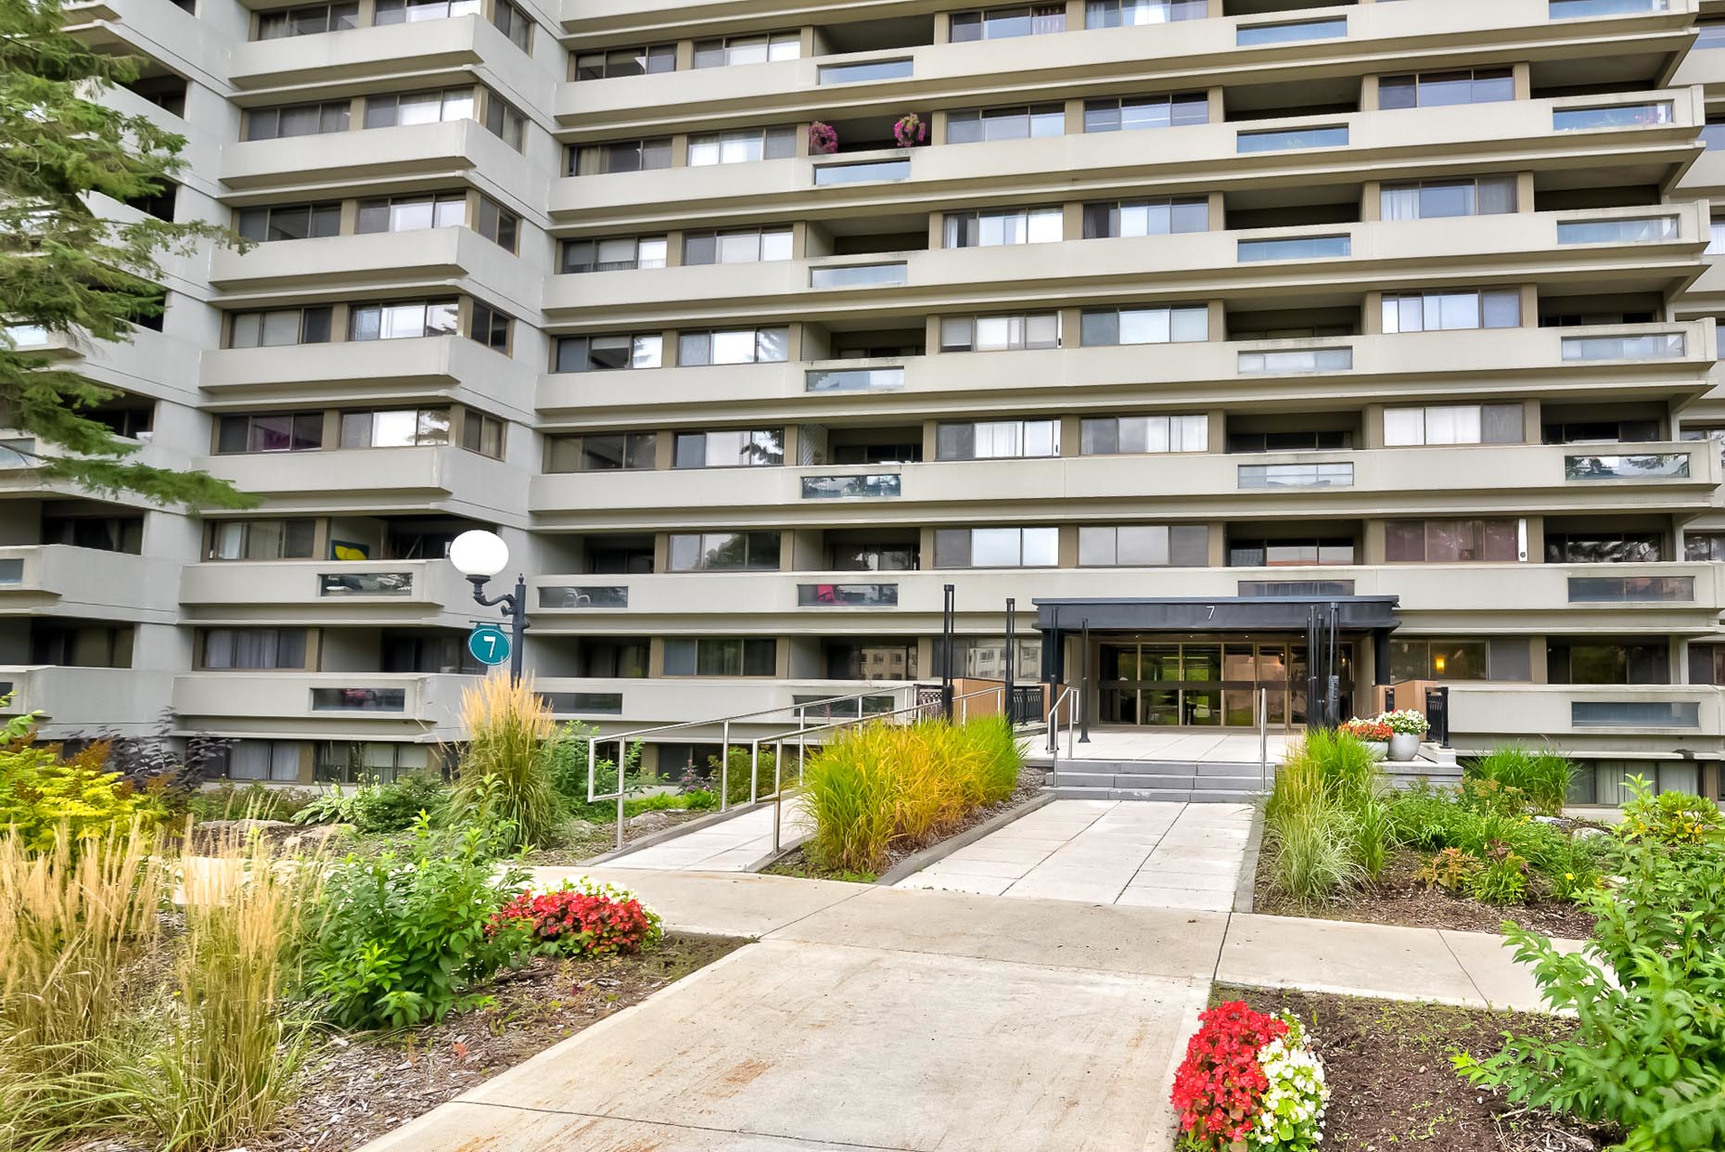 1 bedroom Apartments for rent in Quebec City at Les Jardins de Merici - Photo 33 - RentQuebecApartments – L407121